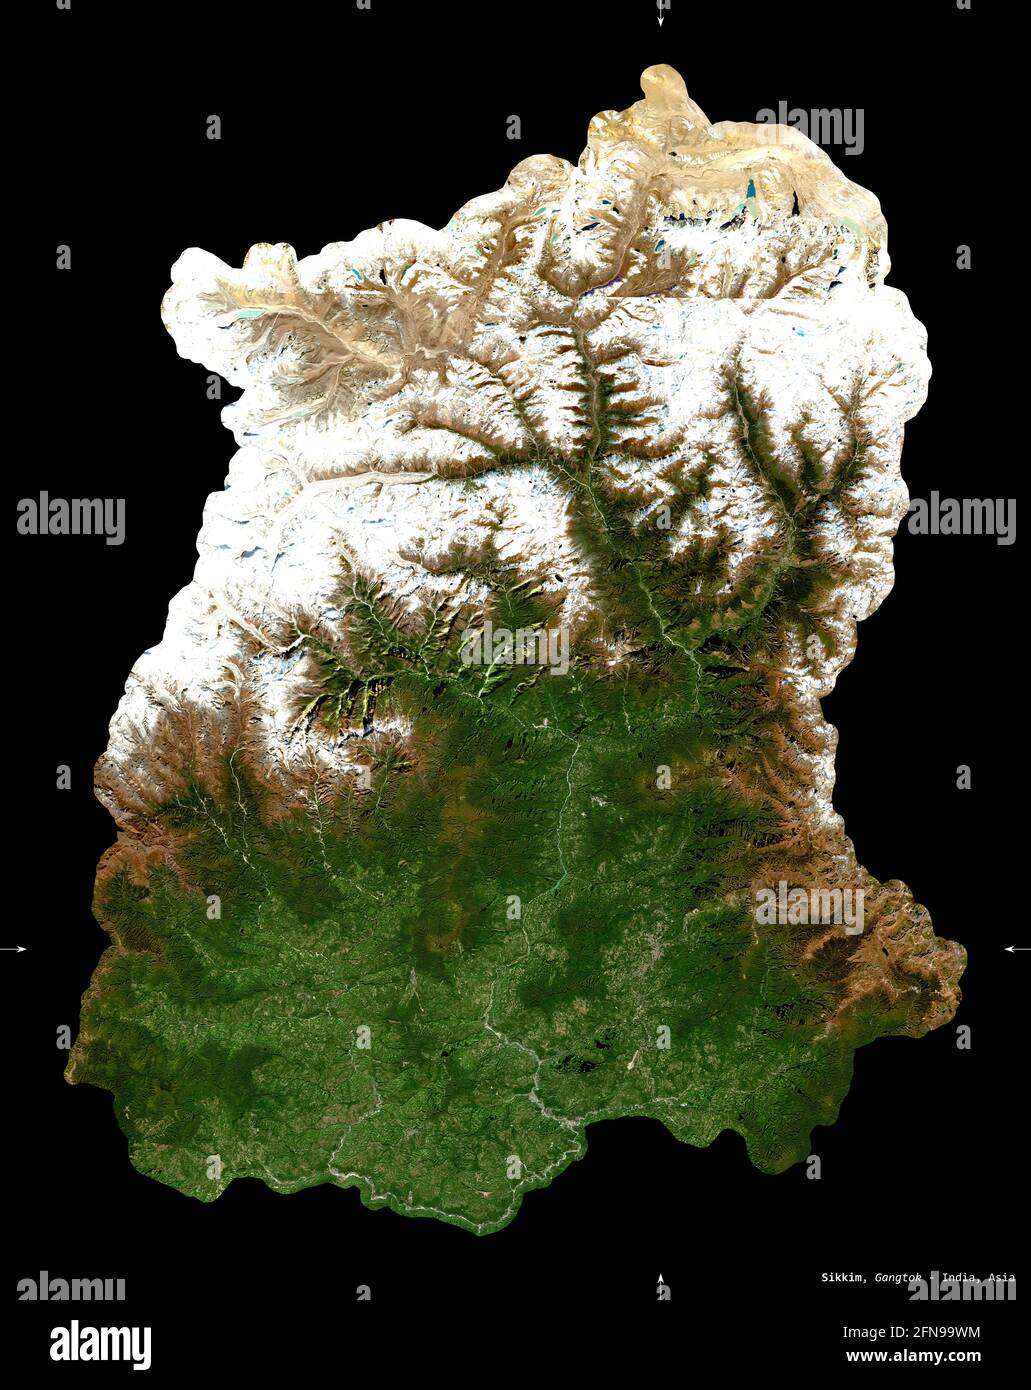 Sikkim, stato dell'India. Immagini satellitari Sentinel-2. Forma isolata su nero. Descrizione, ubicazione della capitale. Contiene Copernico modificato inviato Foto Stock